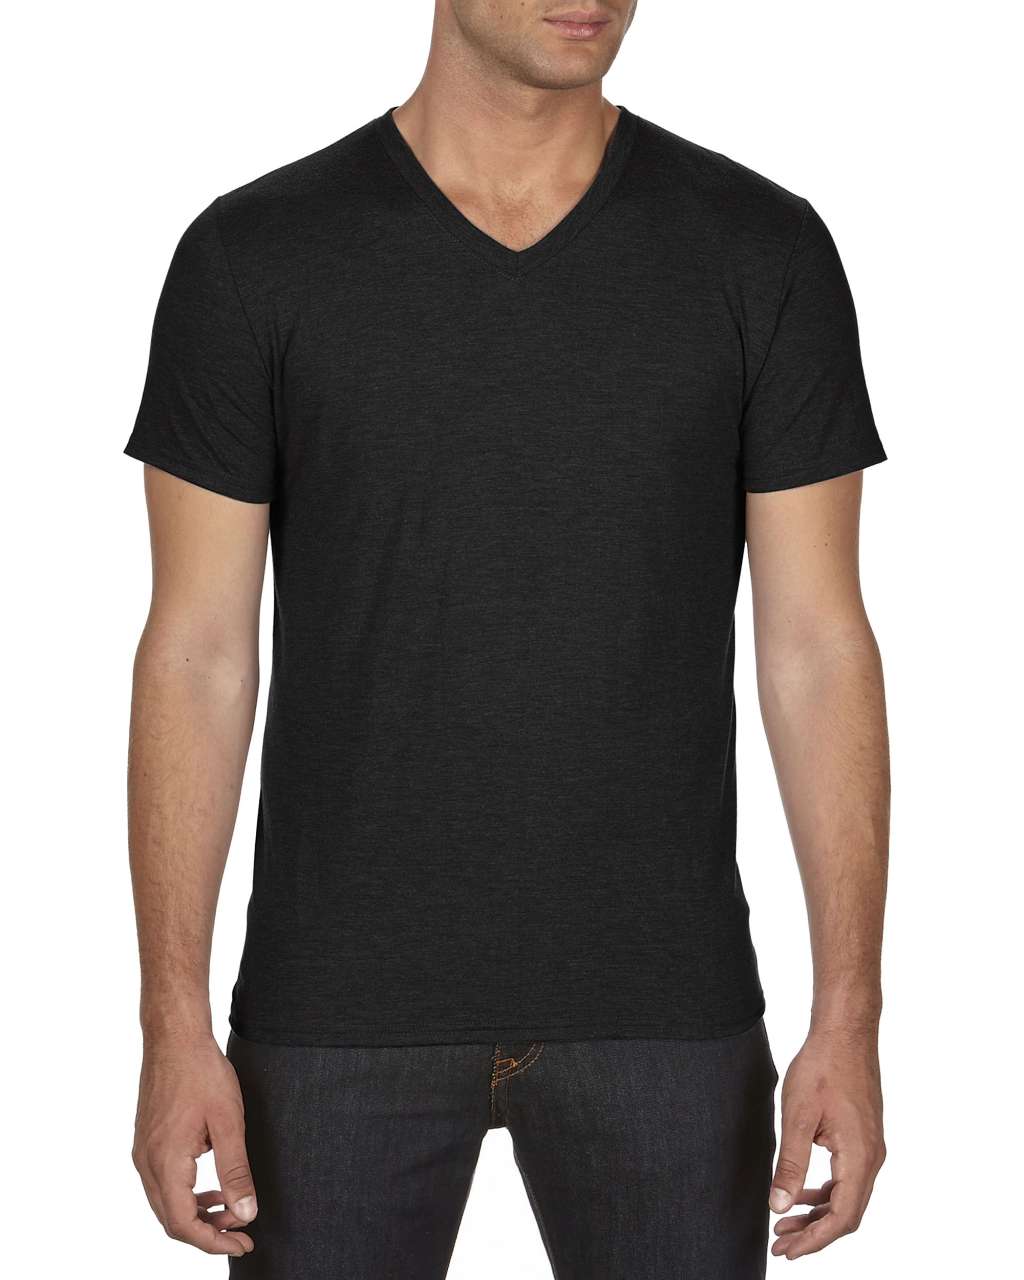 Anvil Herren T-Shirt Kurzarm V-Neck V-Ausschnitt Basic Shirt